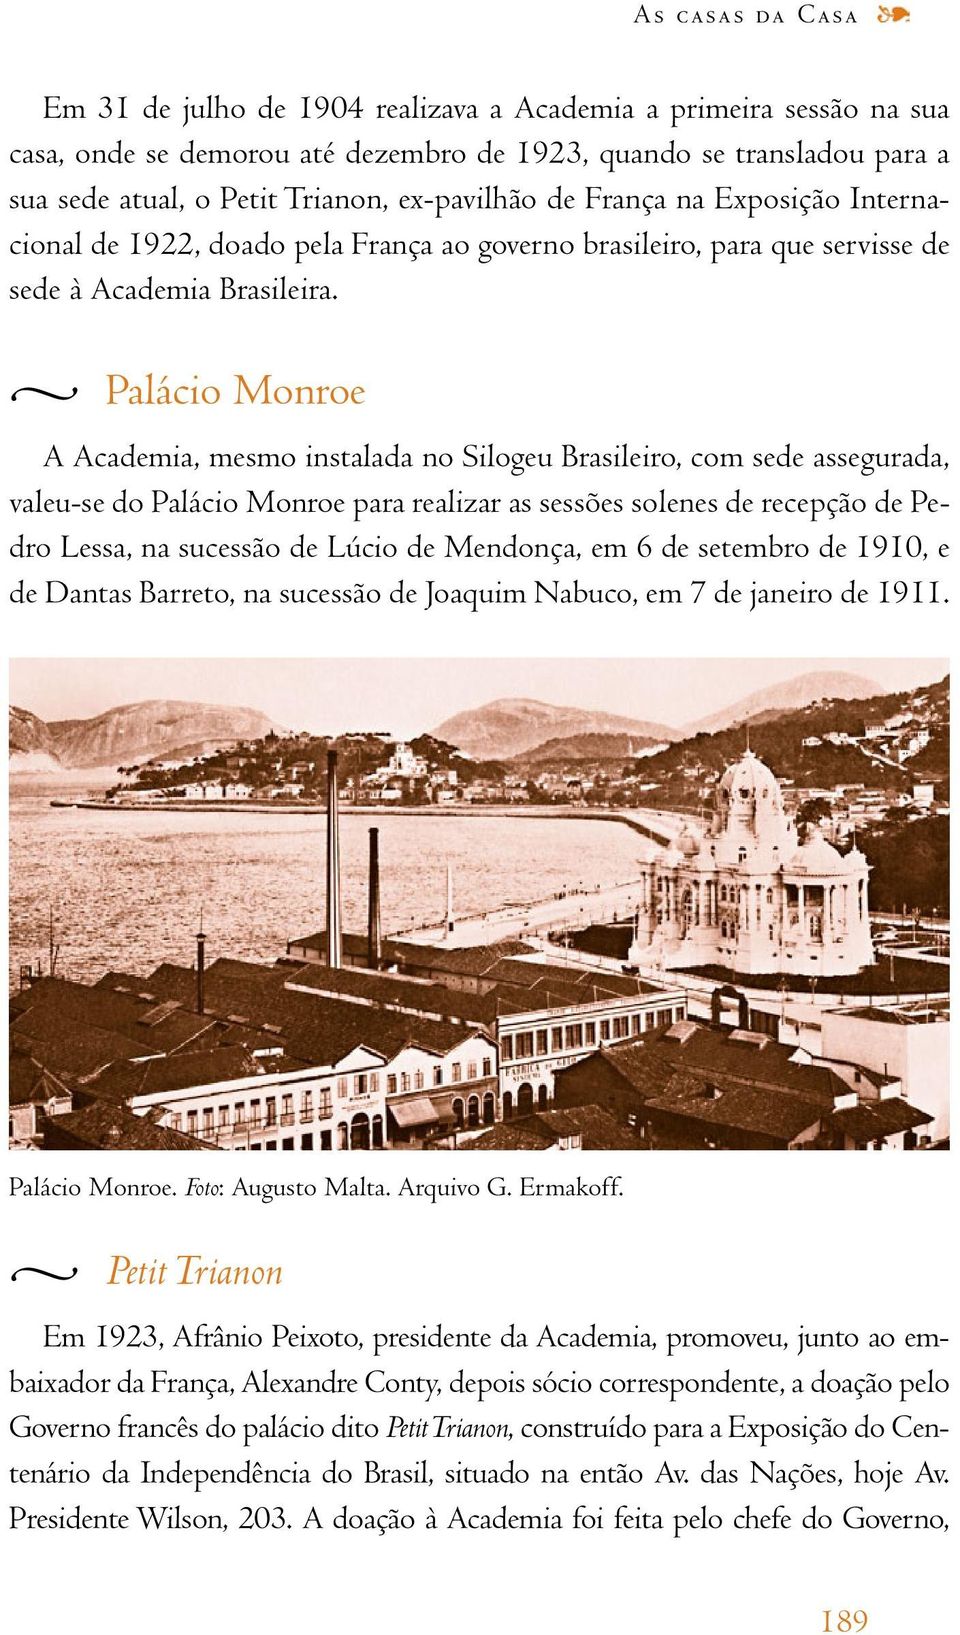 Palácio Monroe A Academia, mesmo instalada no Silogeu Brasileiro, com sede assegurada, valeu-se do Palácio Monroe para realizar as sessões solenes de recepção de Pedro Lessa, na sucessão de Lúcio de